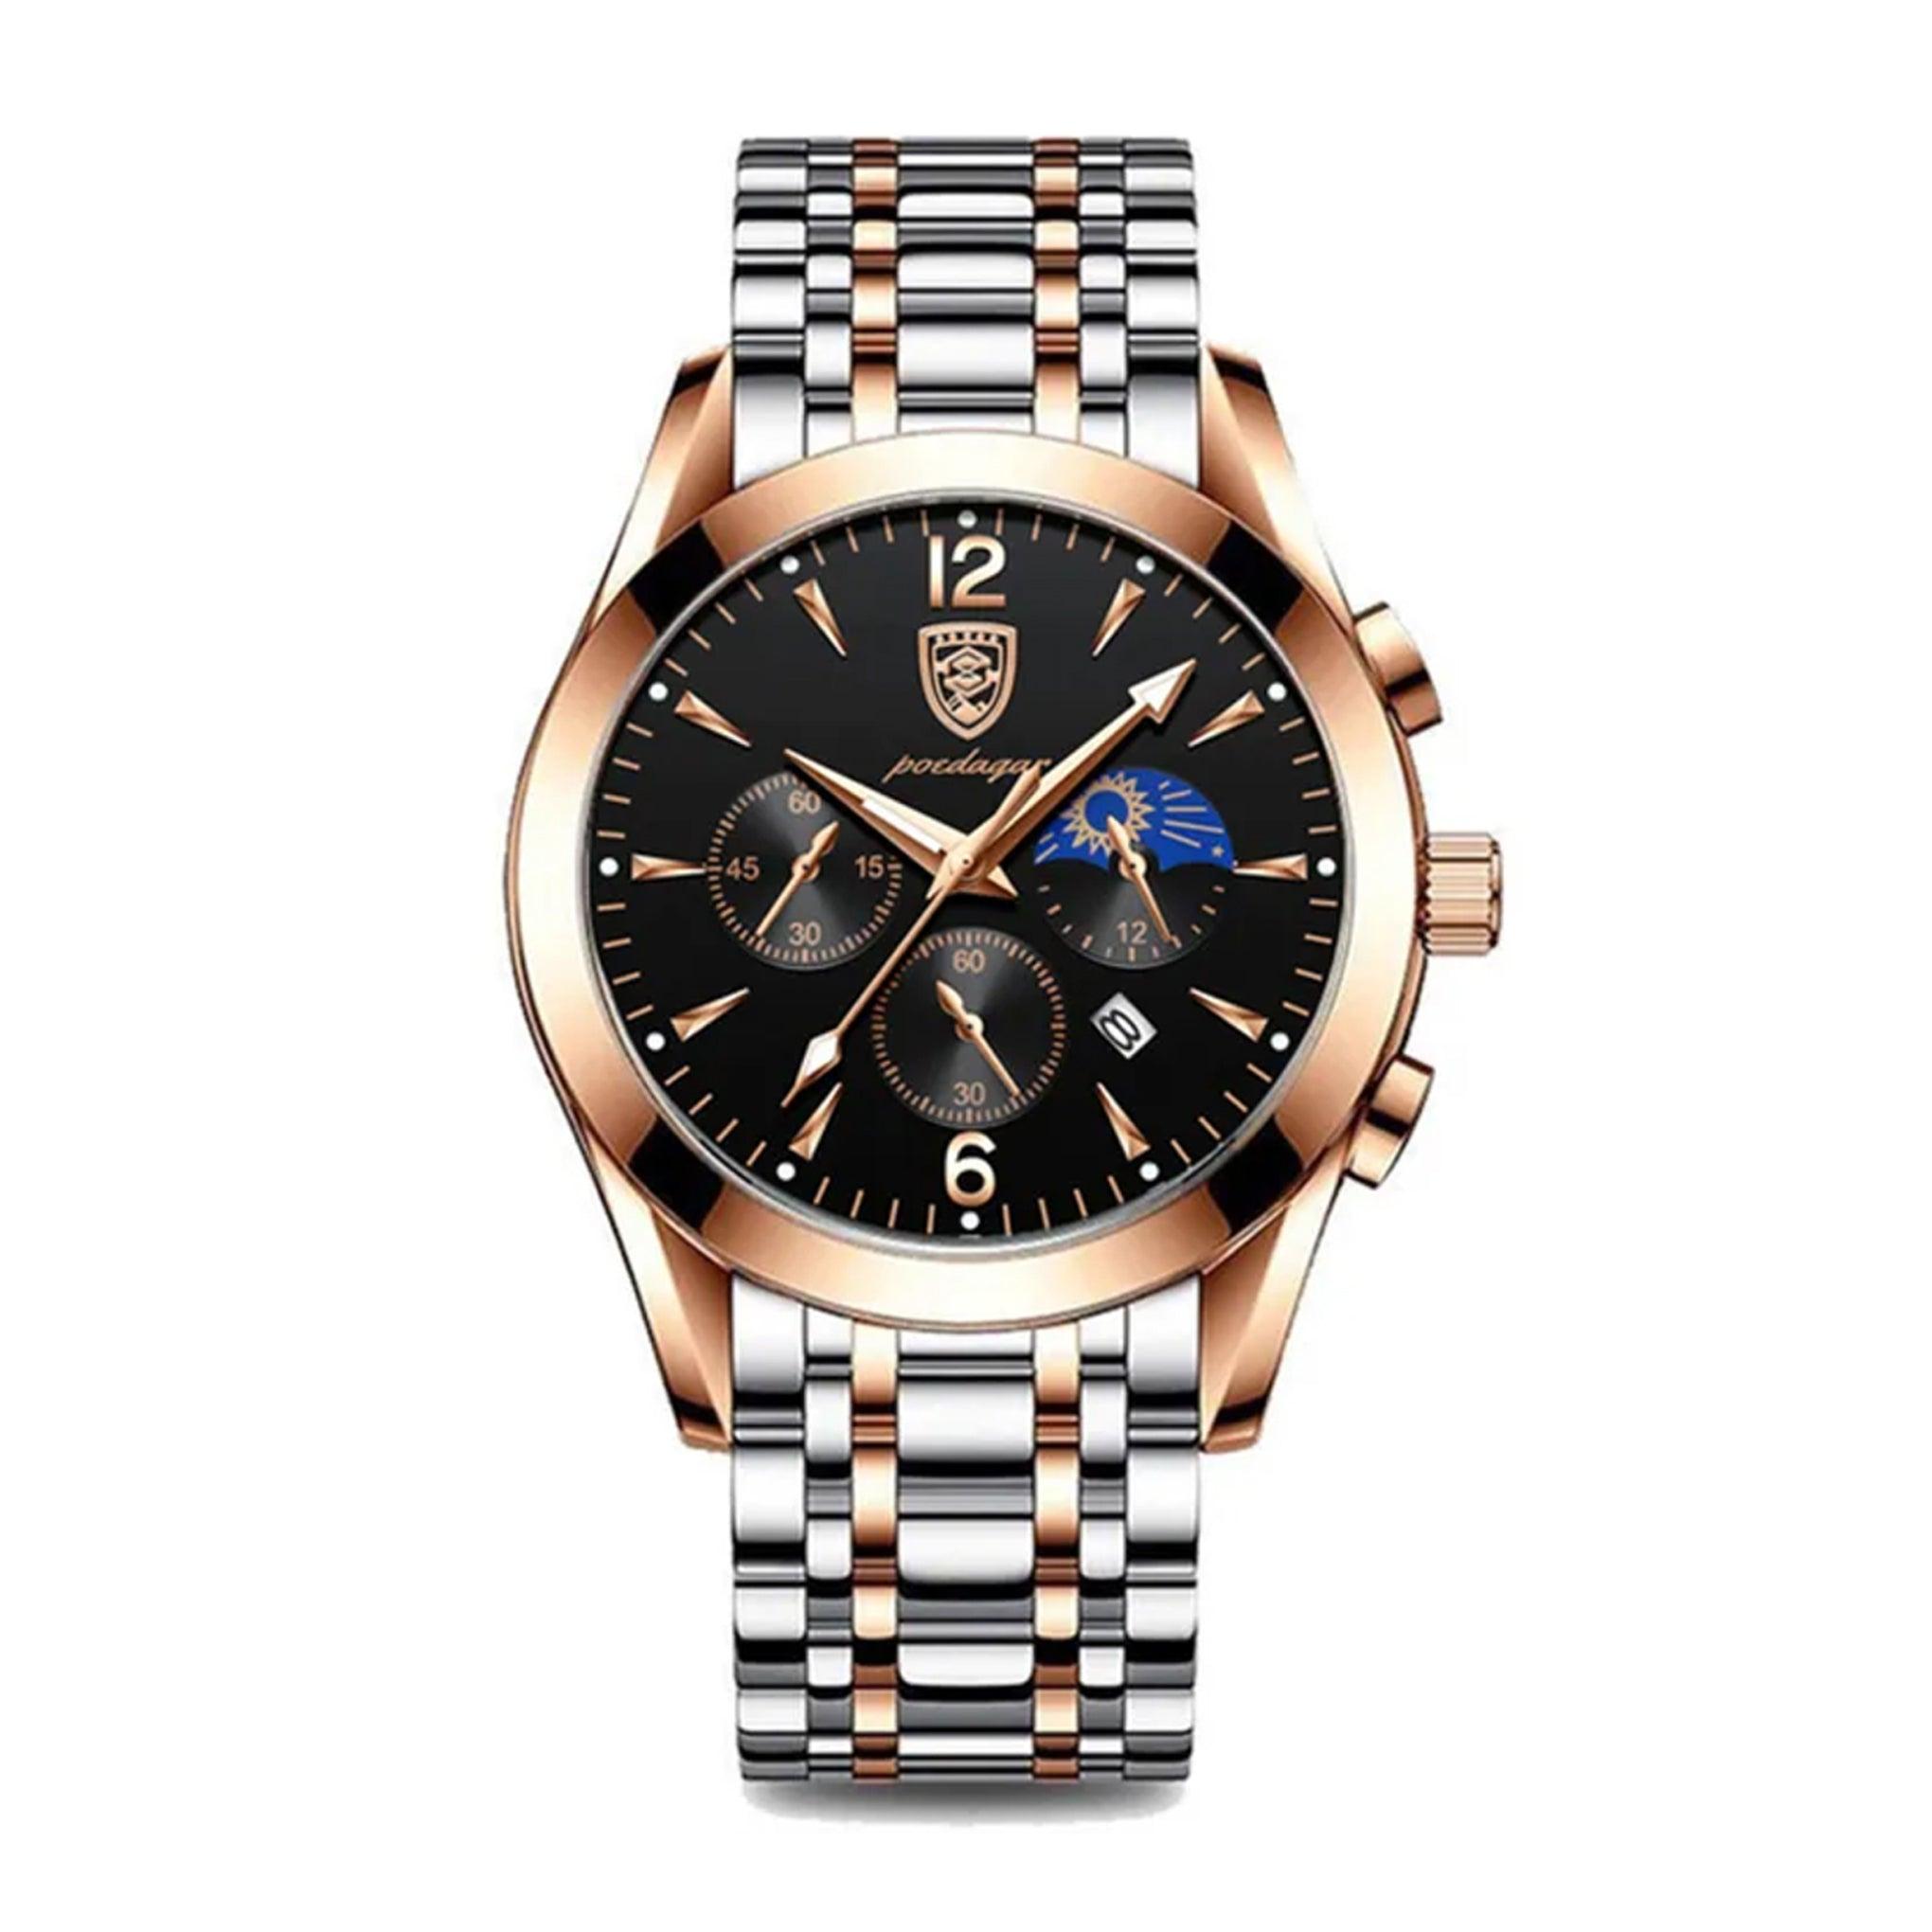 ساعة رجاليه ستانلس ستيل بويدغار Poedagar Men's Two Tone Stainless Steel Luminous Fashion Quartz Watch - 829rgbks